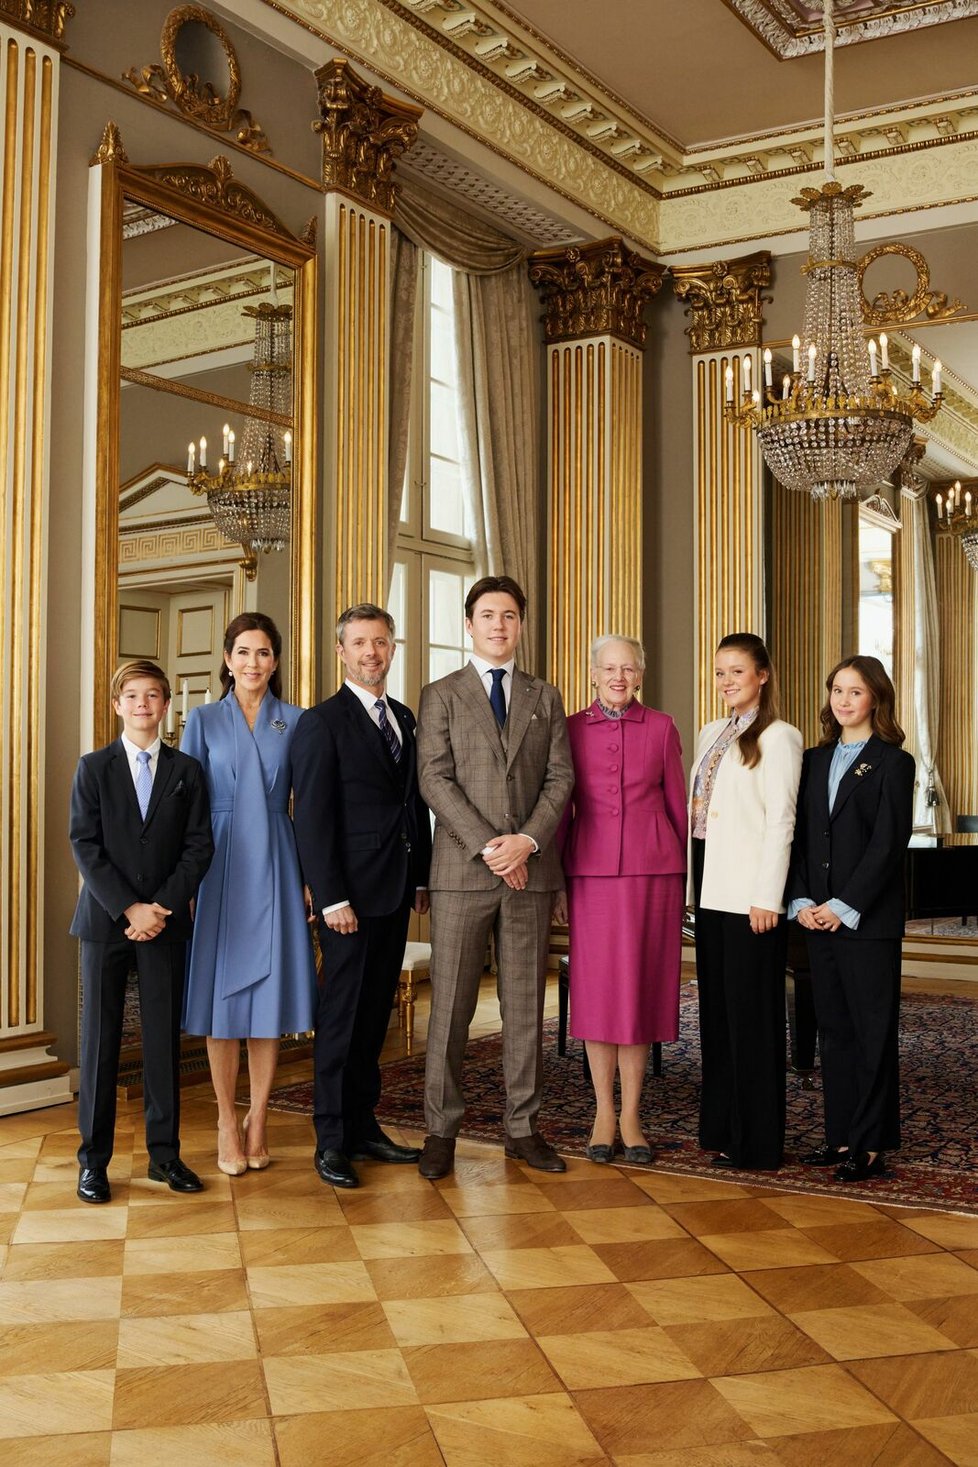 Dánská královská rodina: Vincent, Mary, Frederik X., Christian, Magrethe II., Isabella, Josephine.